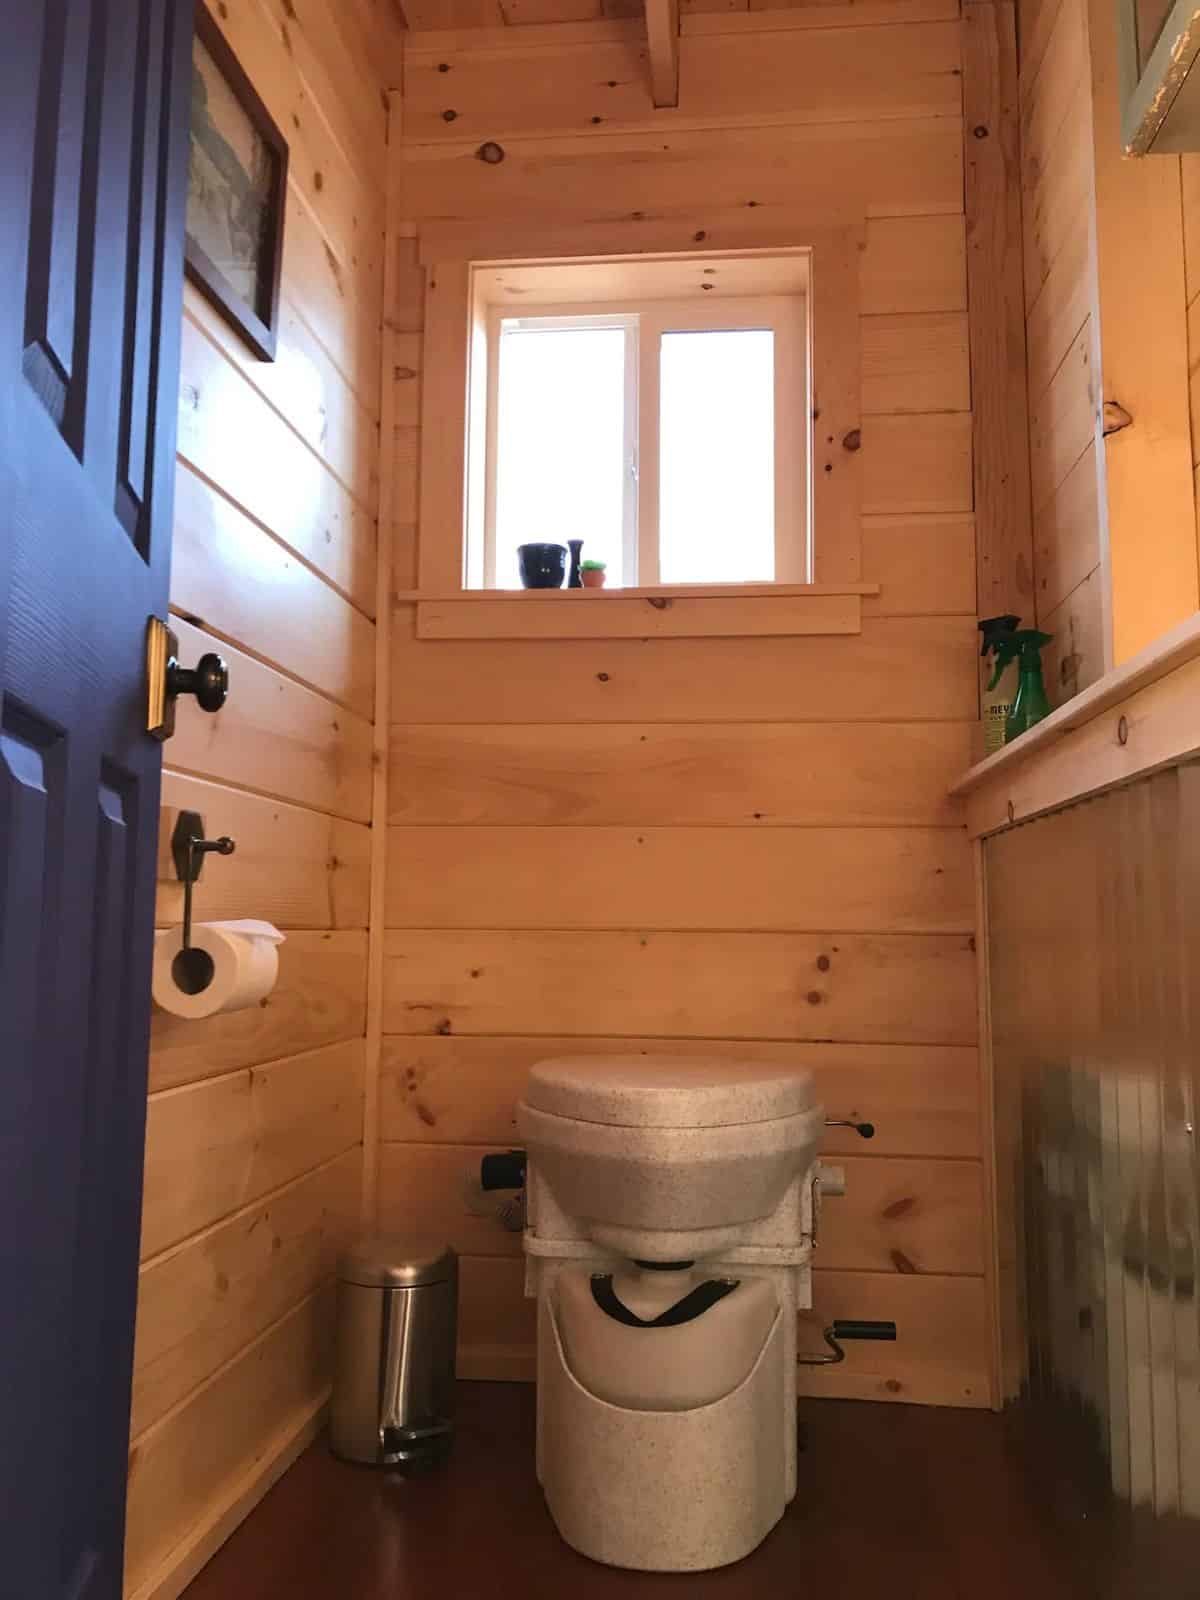 gray compost toilet in bathroom with black door